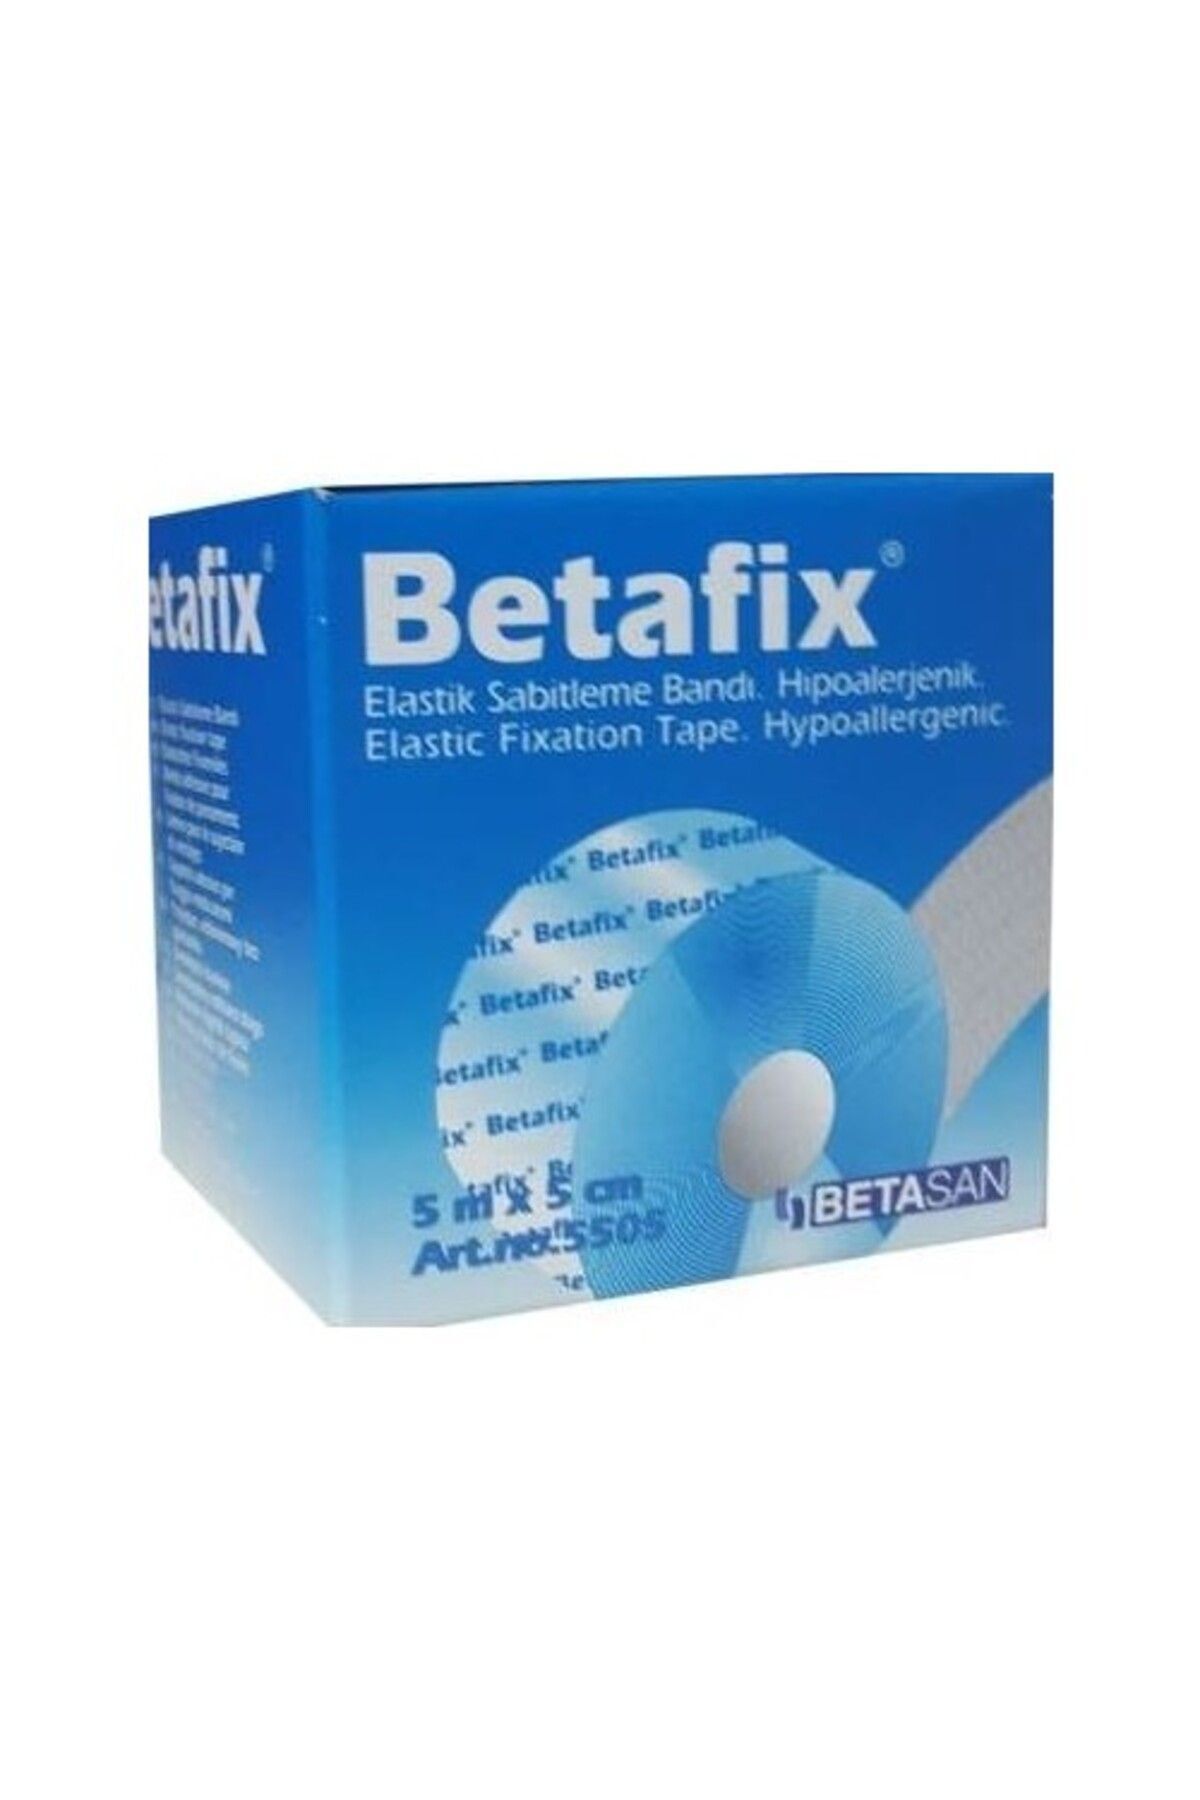 Betafix 5 Mt X 5 Cm Elastik Fix Flaster (5501)